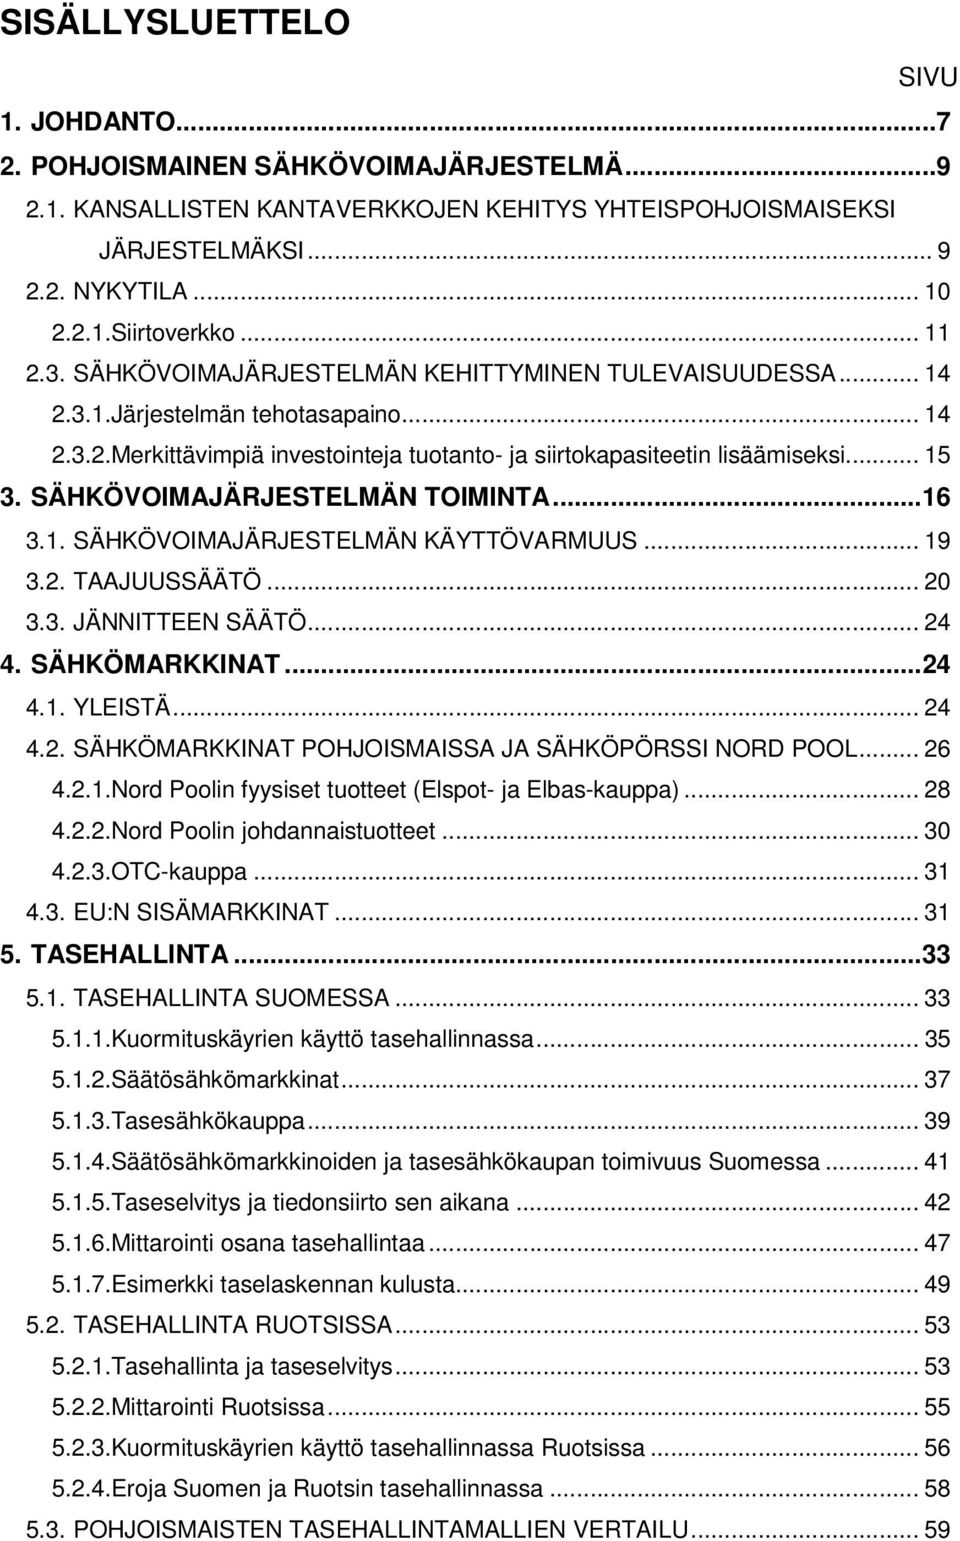 SÄHKÖVOIMAJÄRJESTELMÄN TOIMINTA...16 3.1. SÄHKÖVOIMAJÄRJESTELMÄN KÄYTTÖVARMUUS... 19 3.2. TAAJUUSSÄÄTÖ... 20 3.3. JÄNNITTEEN SÄÄTÖ... 24 4. SÄHKÖMARKKINAT...24 4.1. YLEISTÄ... 24 4.2. SÄHKÖMARKKINAT POHJOISMAISSA JA SÄHKÖPÖRSSI NORD POOL.